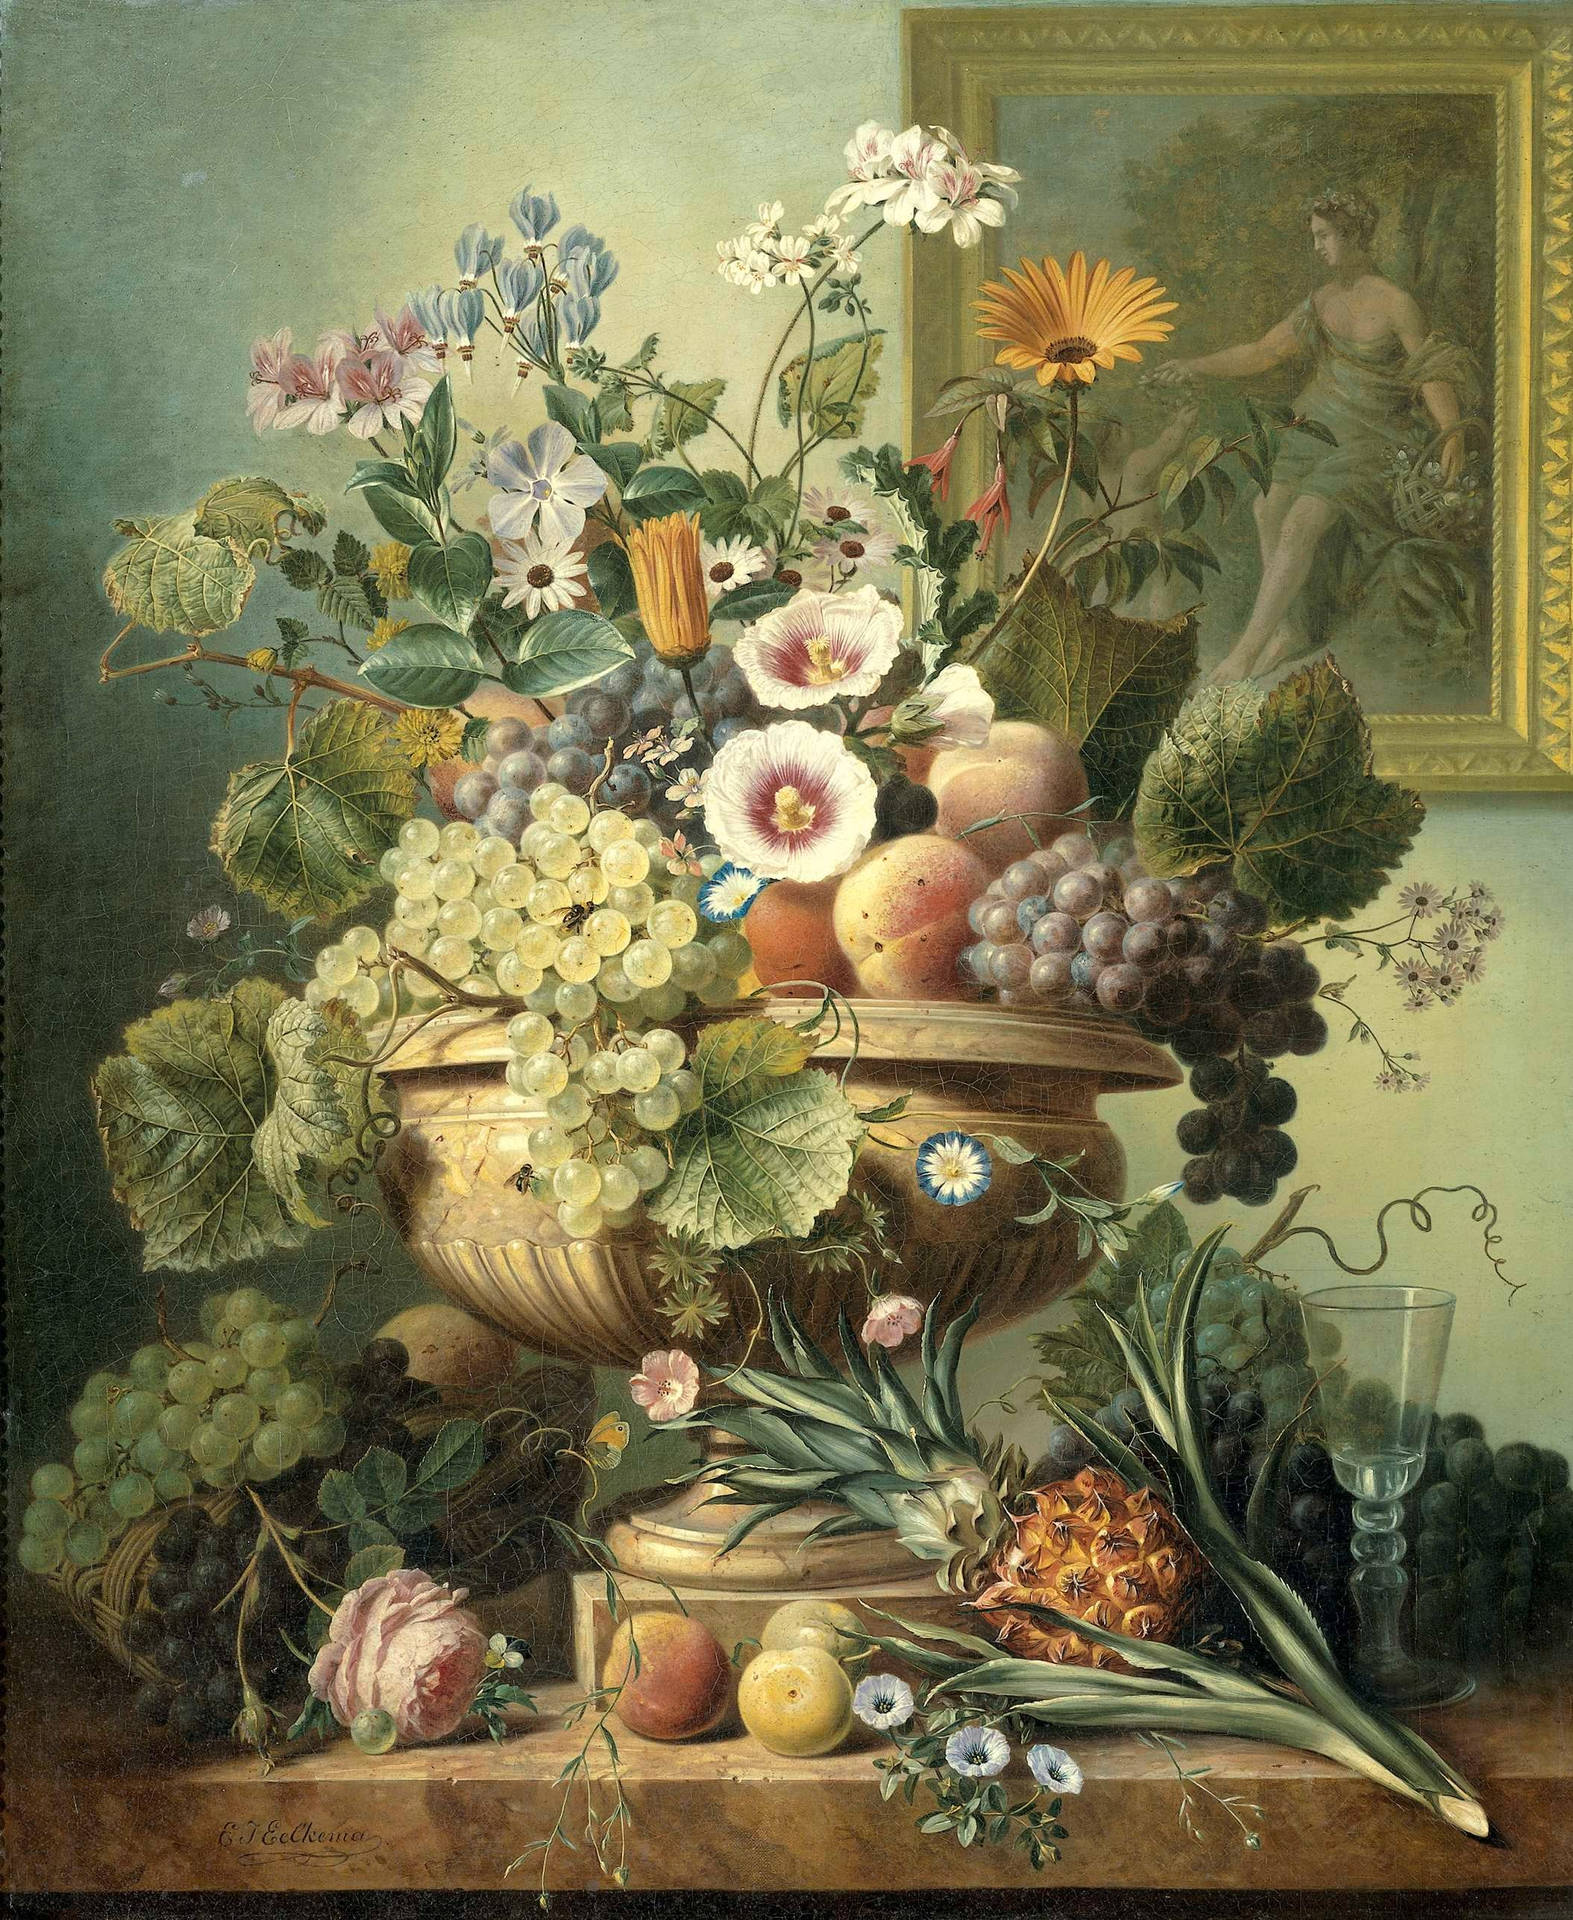 Stilllebenmit Blumen- Und Früchtemalerei. Wallpaper